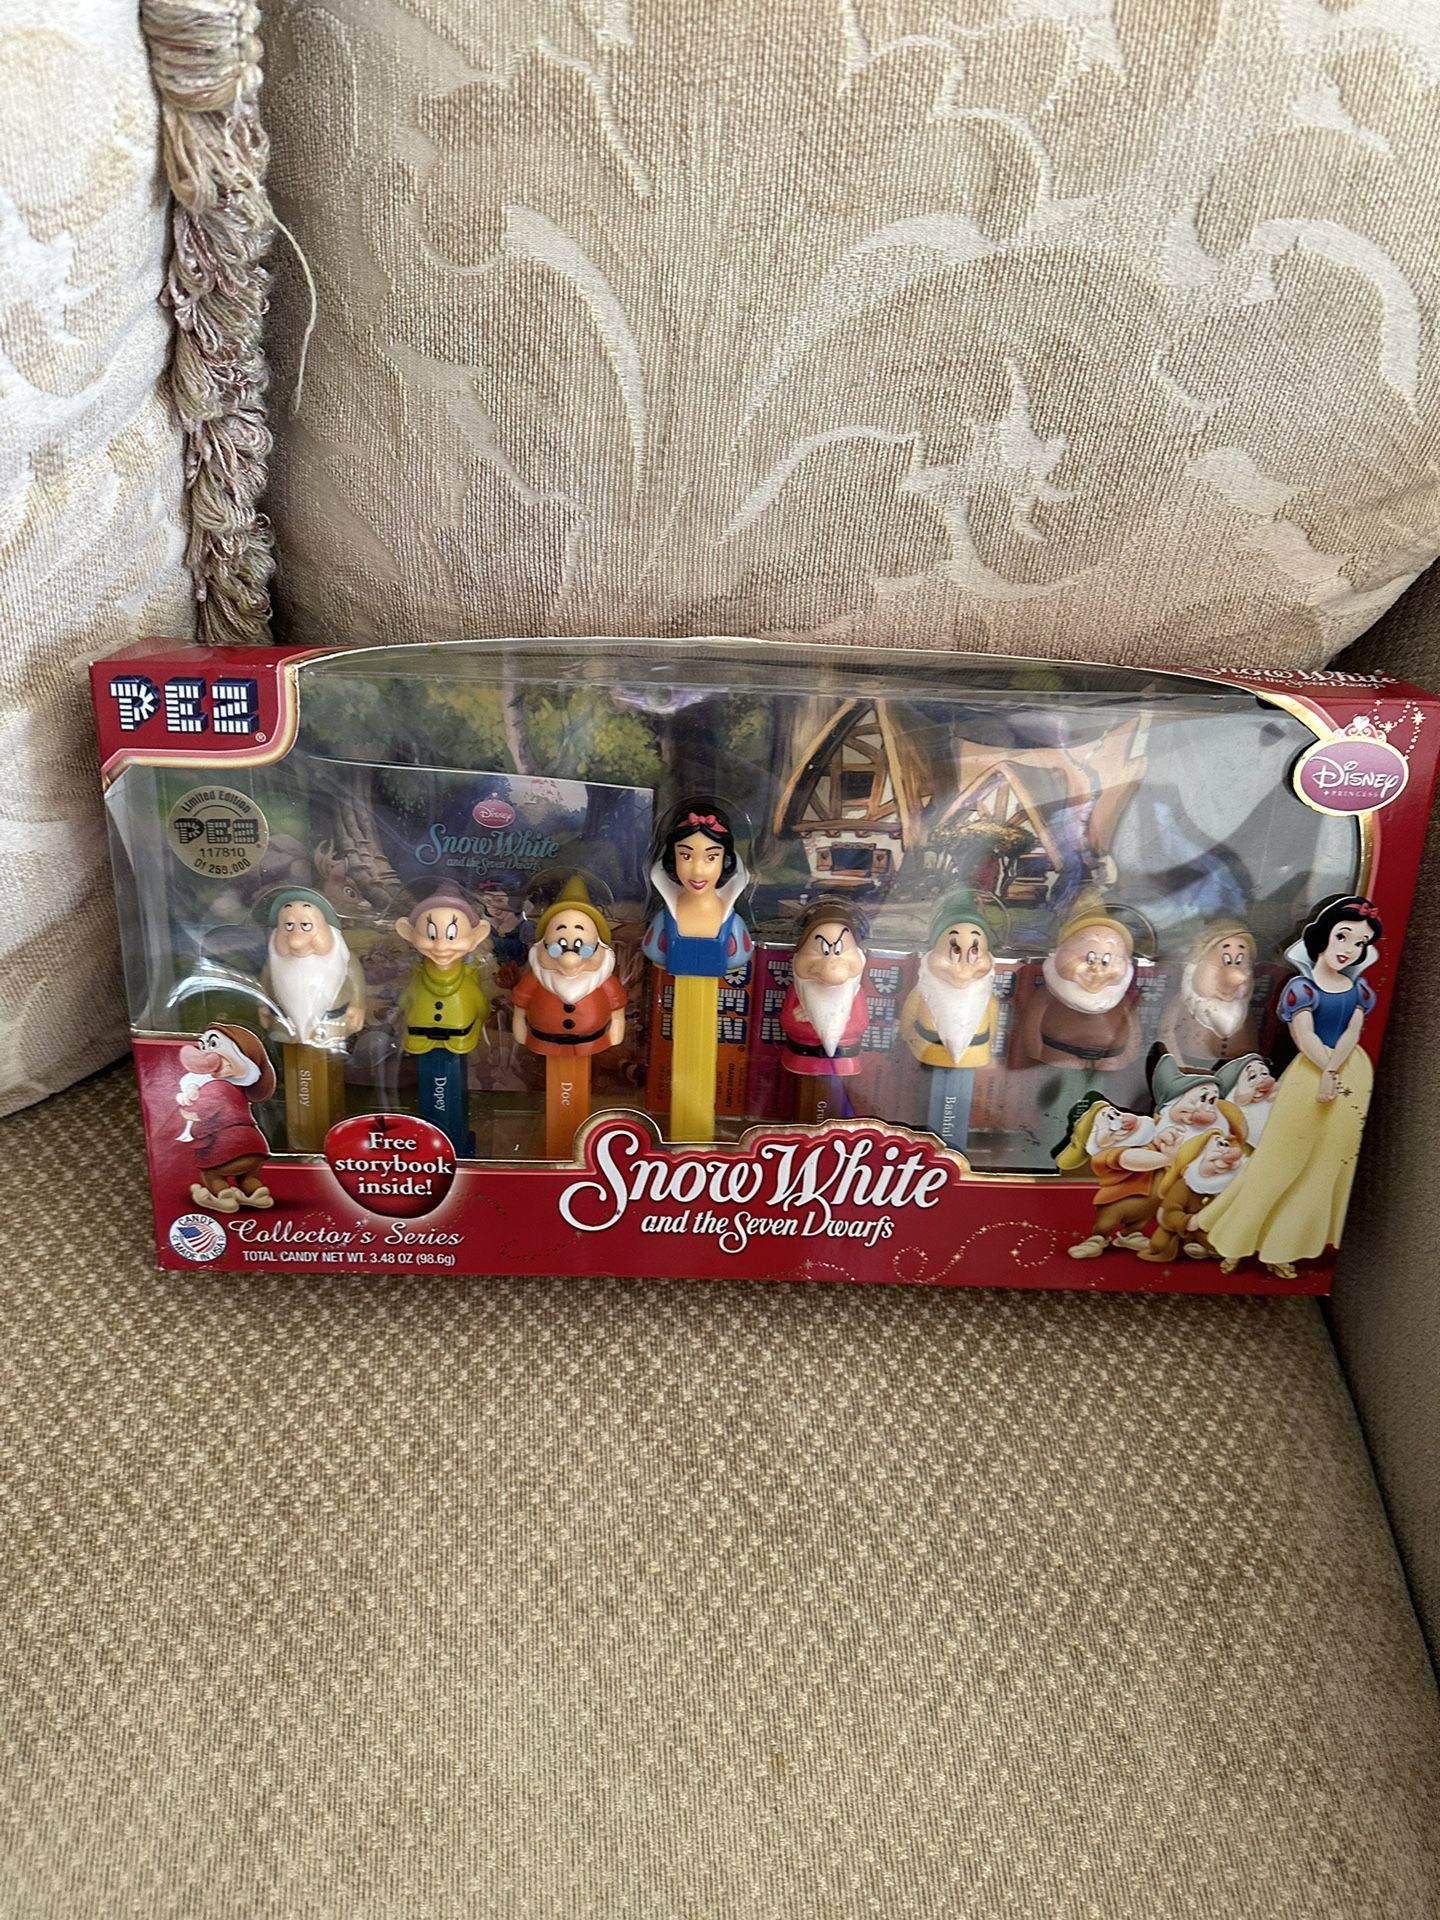 PEZ Disney Snow White Seven Dwarfs Limited Edition Collectors Box Set